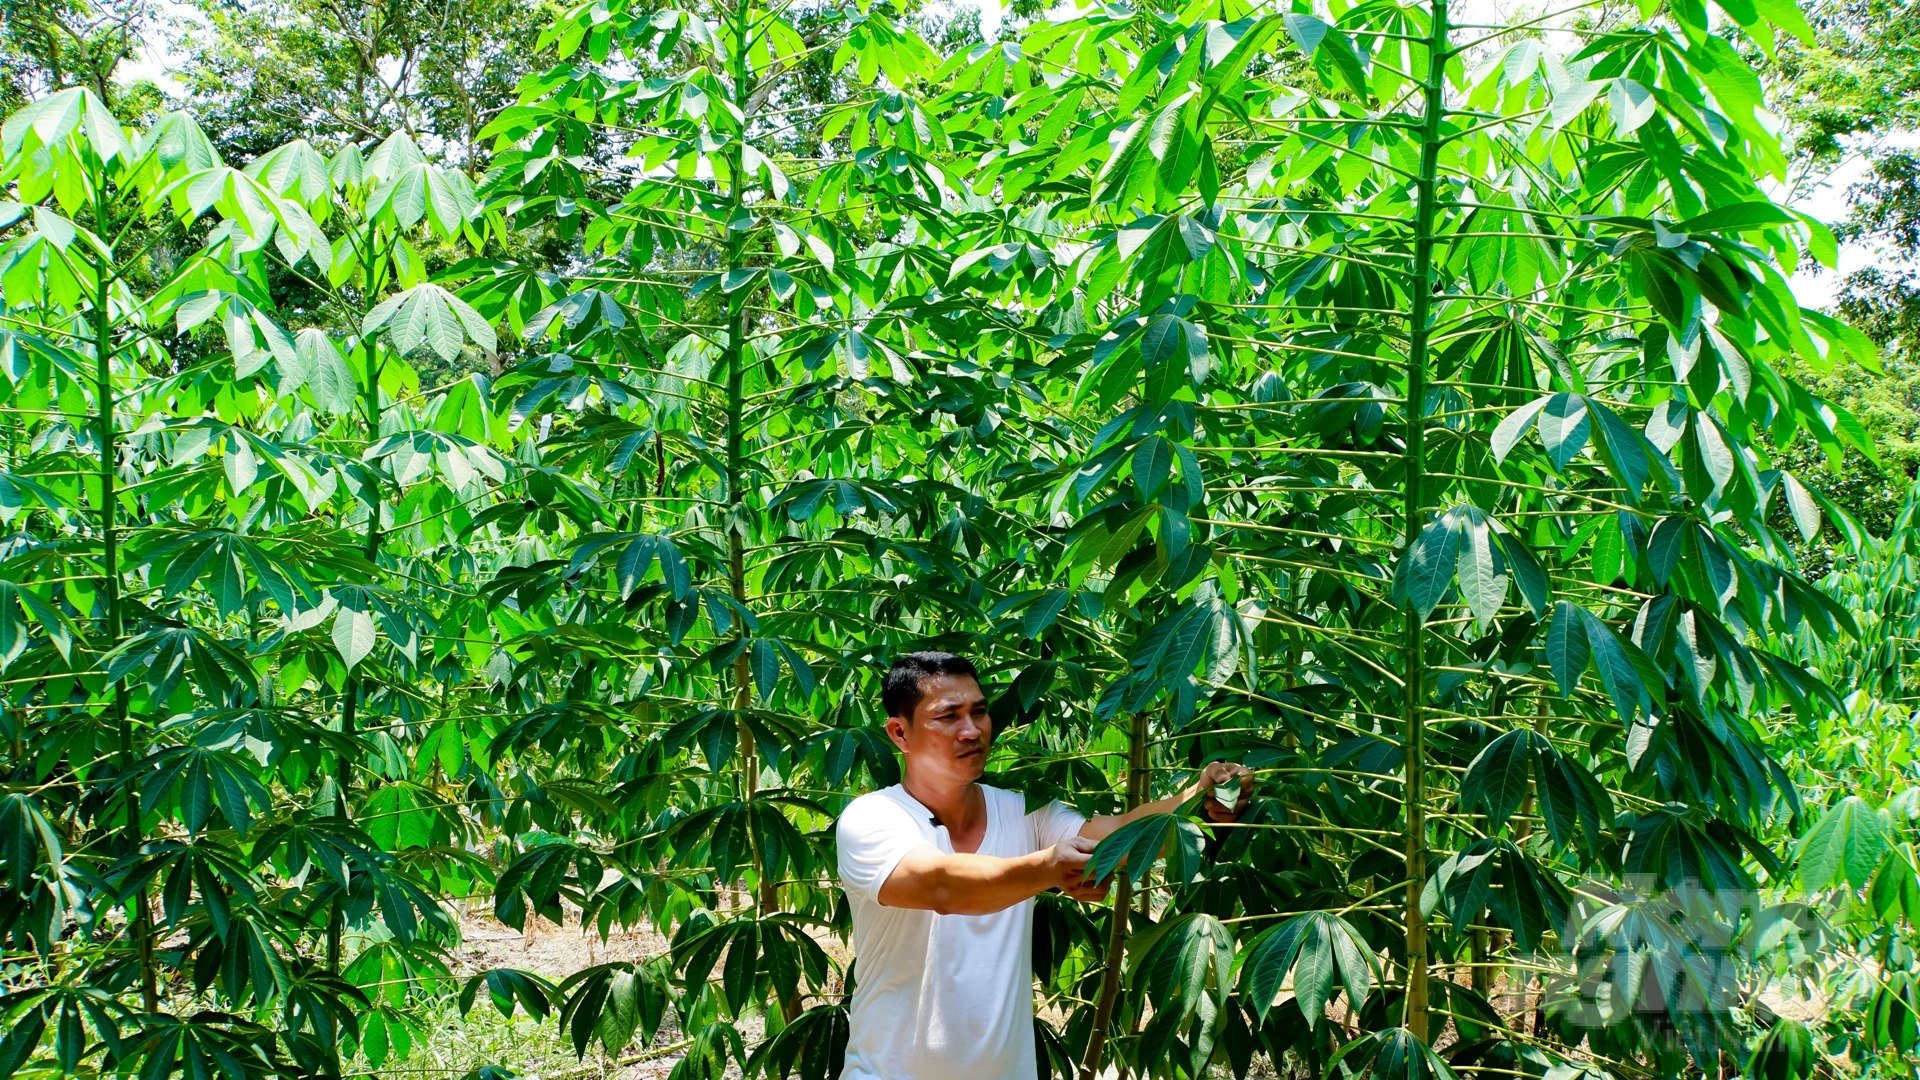 Tây Ninh đặc biệt có ưu điểm về vấn đề thủy lợi. Nhờ đó, cây cối xanh tốt phát triển, cho năng suất cao. Ảnh: Trần Trung.